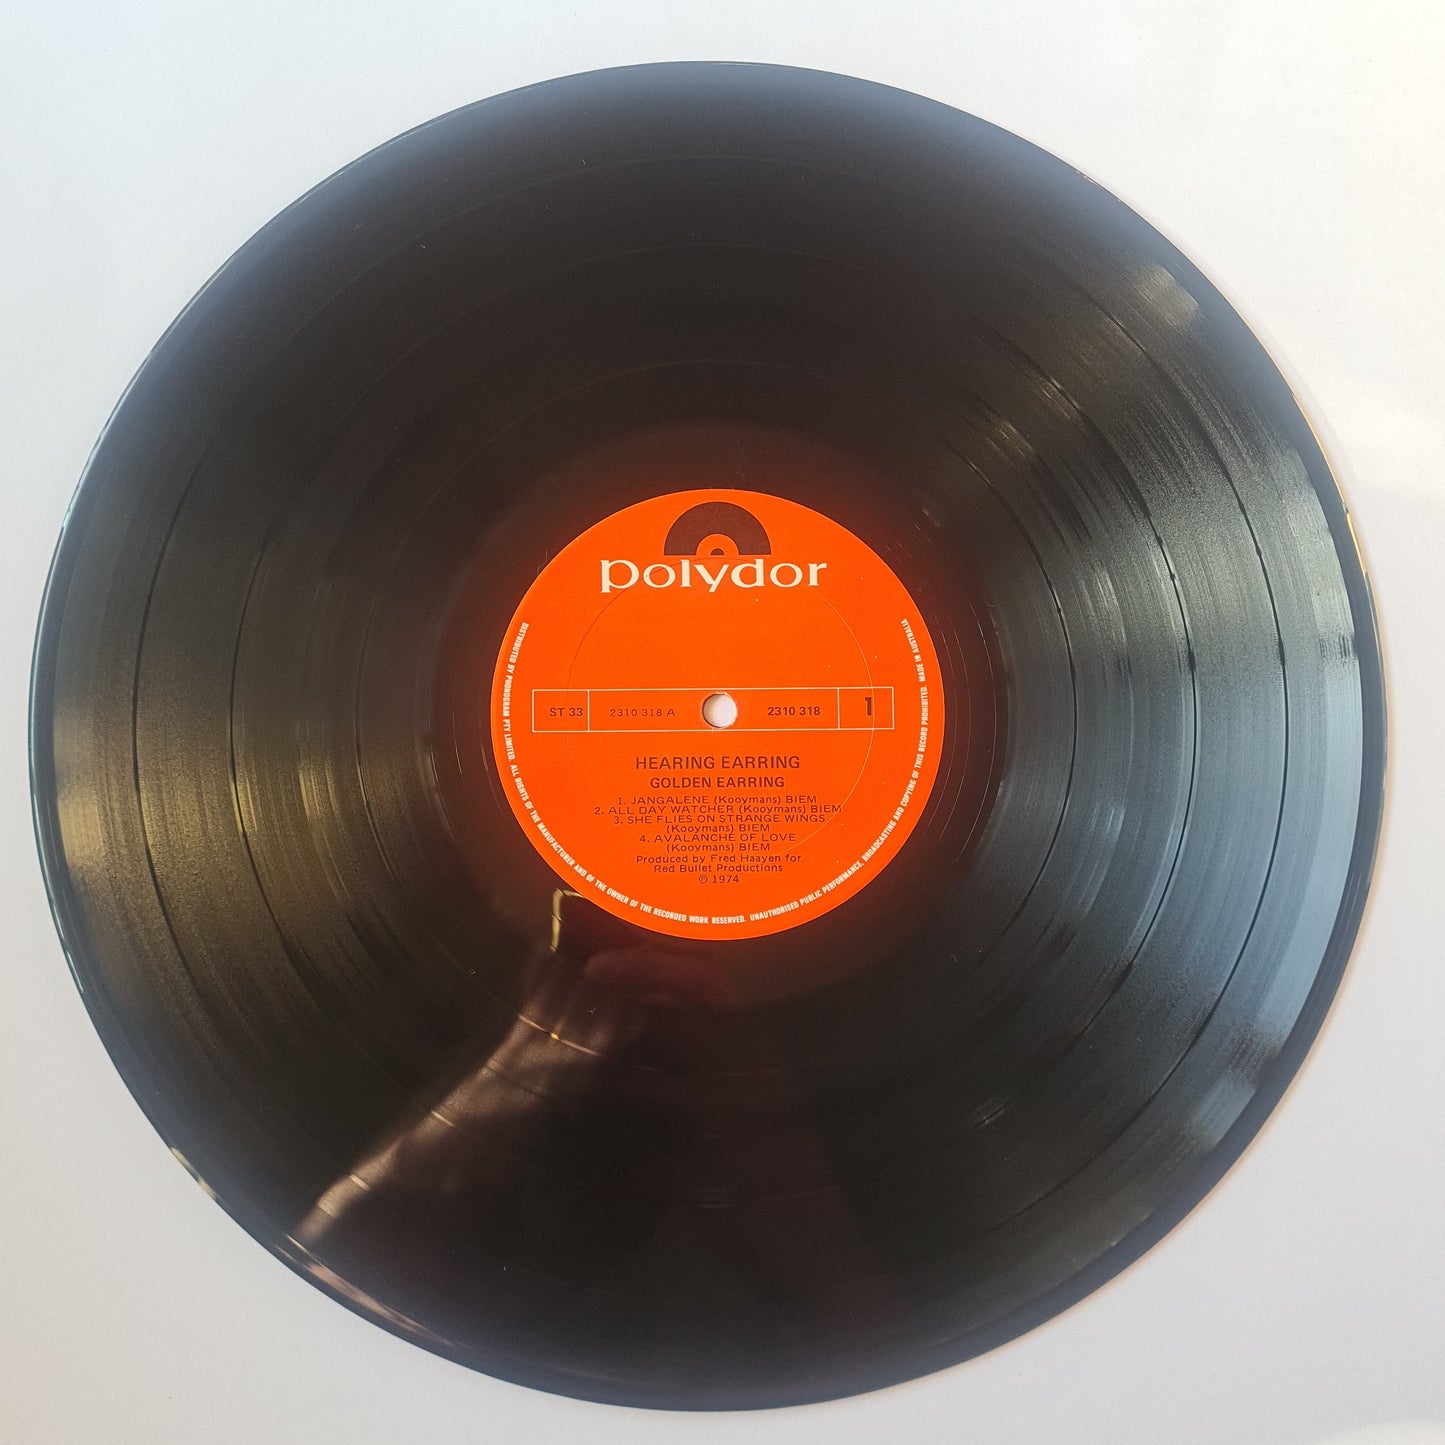 Golden Earring – Hearing Earring - 1974 - Vinyl Record